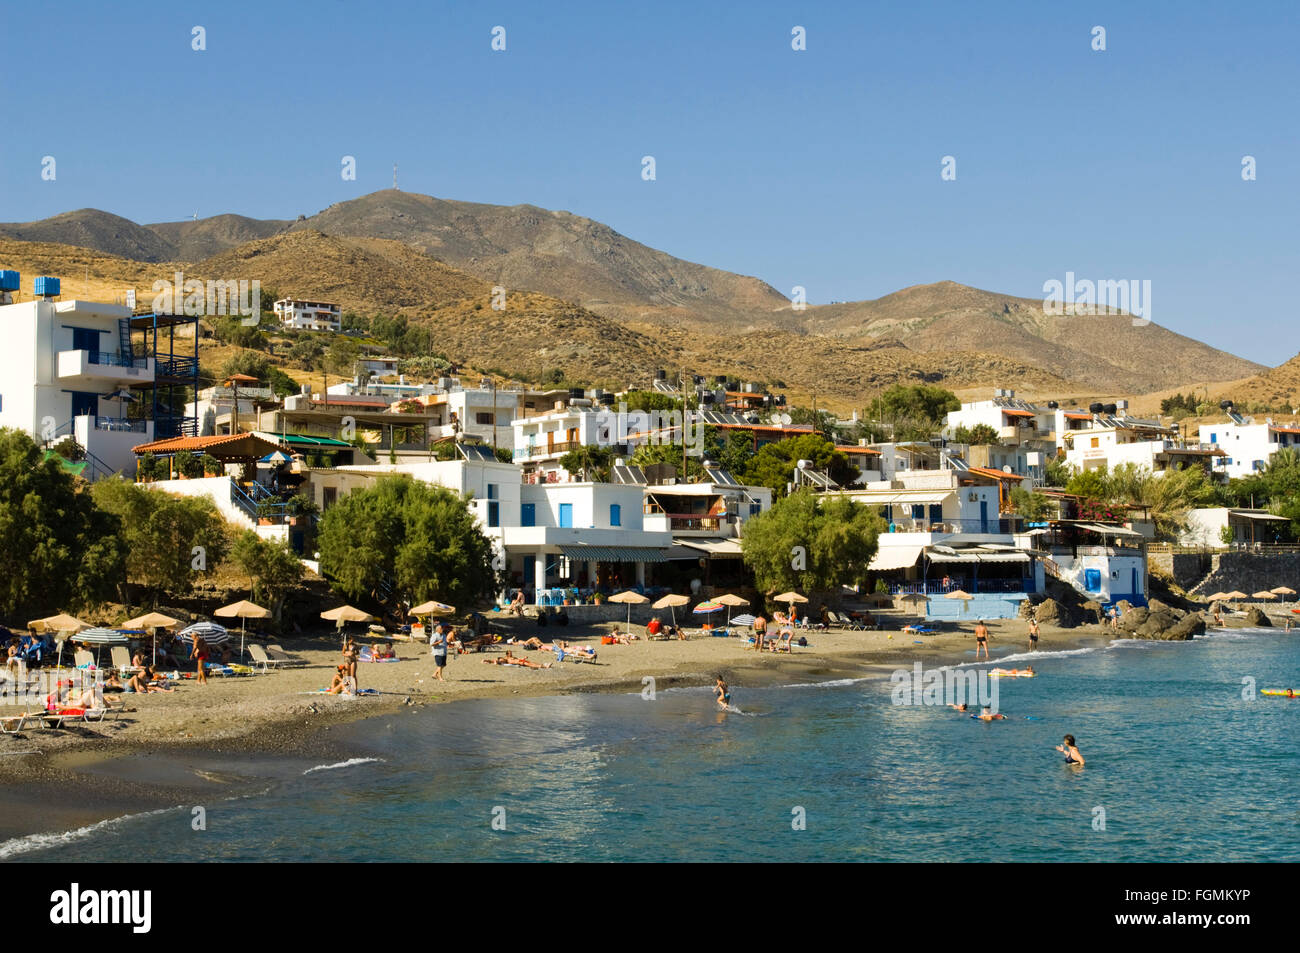 Griechenland, Kreta, Lendas, ein bisher wenig erschlossener, Urlaubsort mit einem kleinen Strand und ein paar Tavernen. Stock Photo